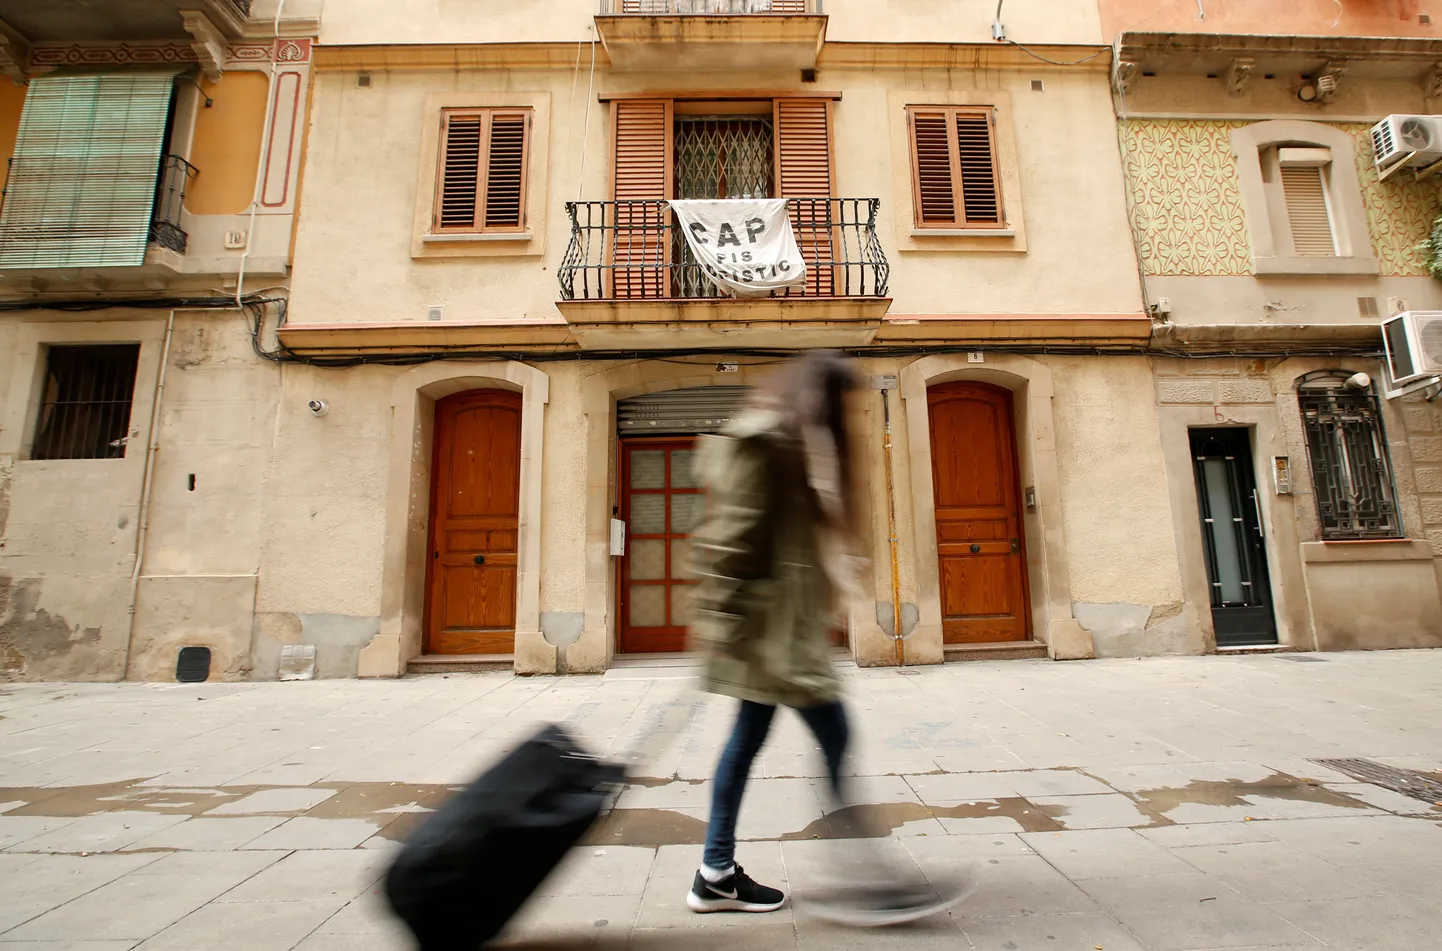 Растяжка на балконе в Барселоне. "Cap pis turistic"(никакого жилья для туристов -  перевод с каталанского).